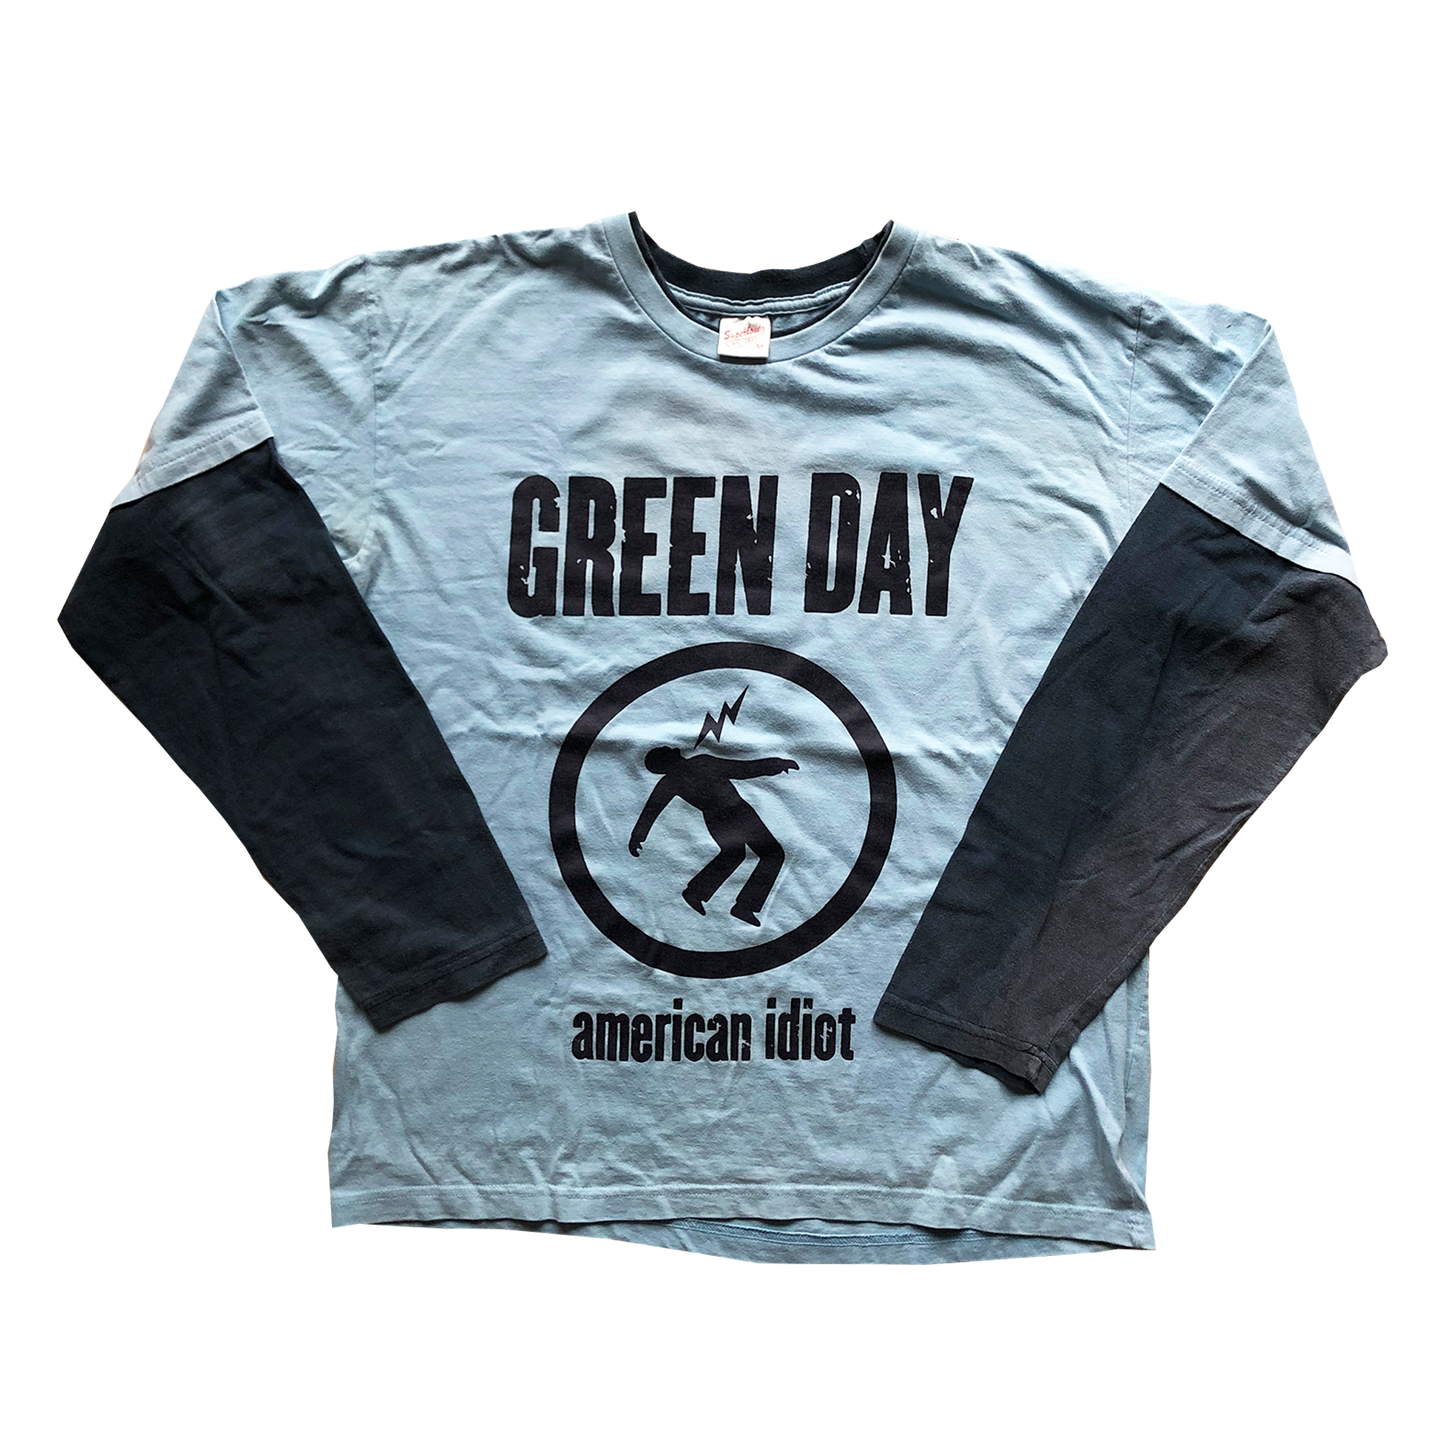 Green Day "American Idiot" European Tour 2005 / M